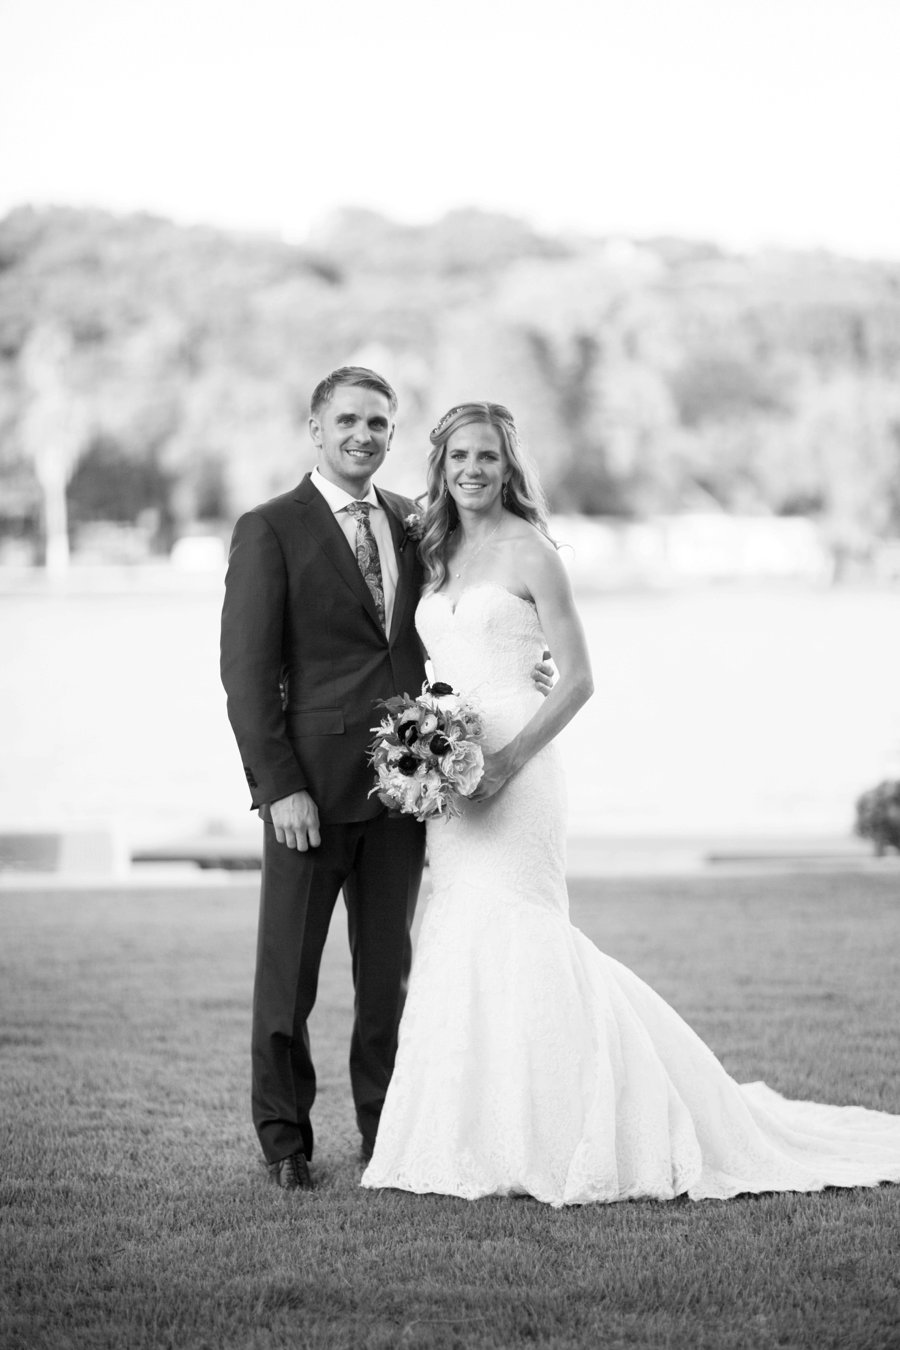 A Classic Blue, Green & White Texas Wedding via TheELD.com